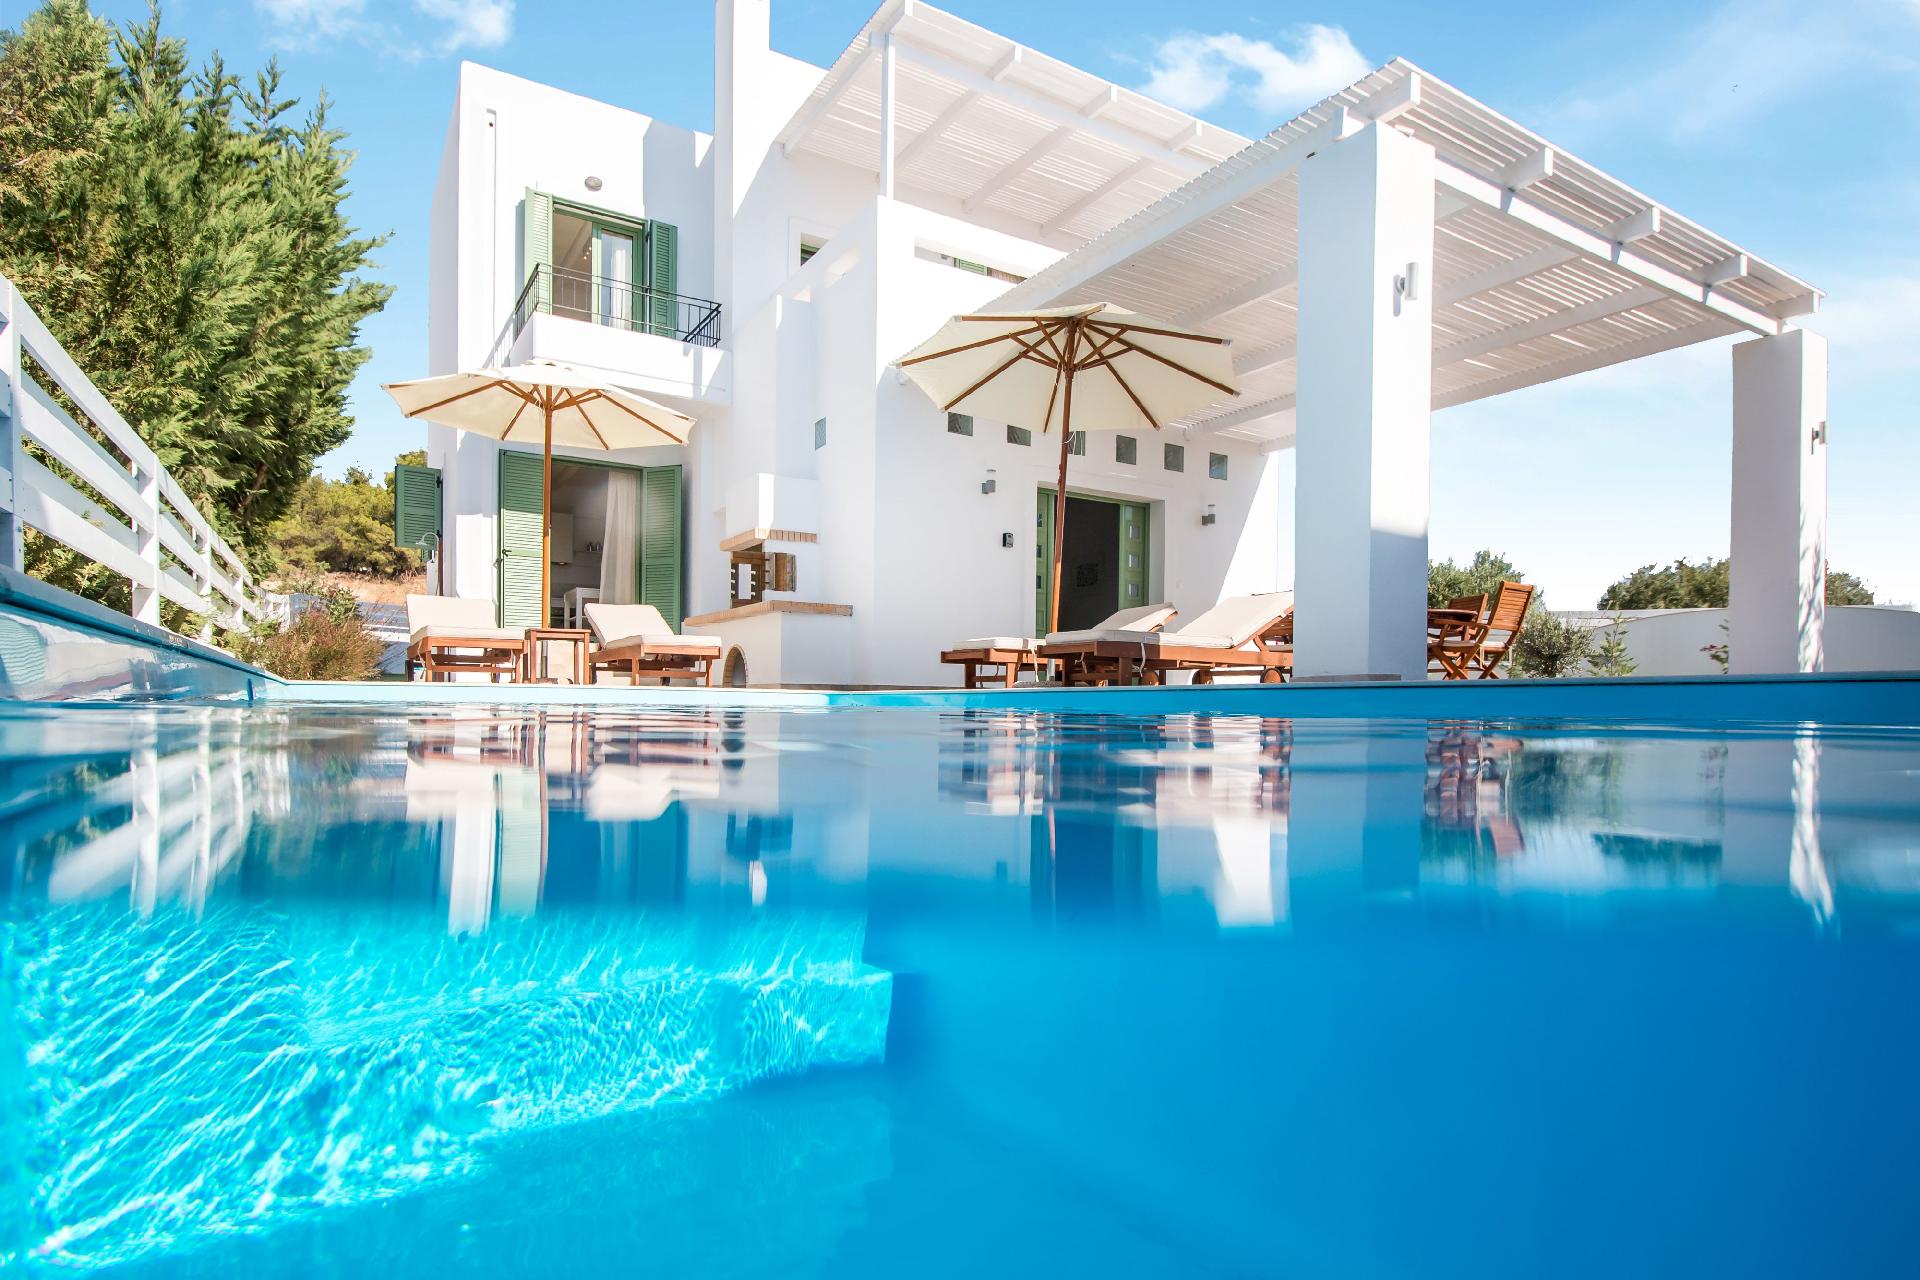 Ferienhaus mit Privatpool für 6 Personen ca.  Ferienhaus in Griechenland